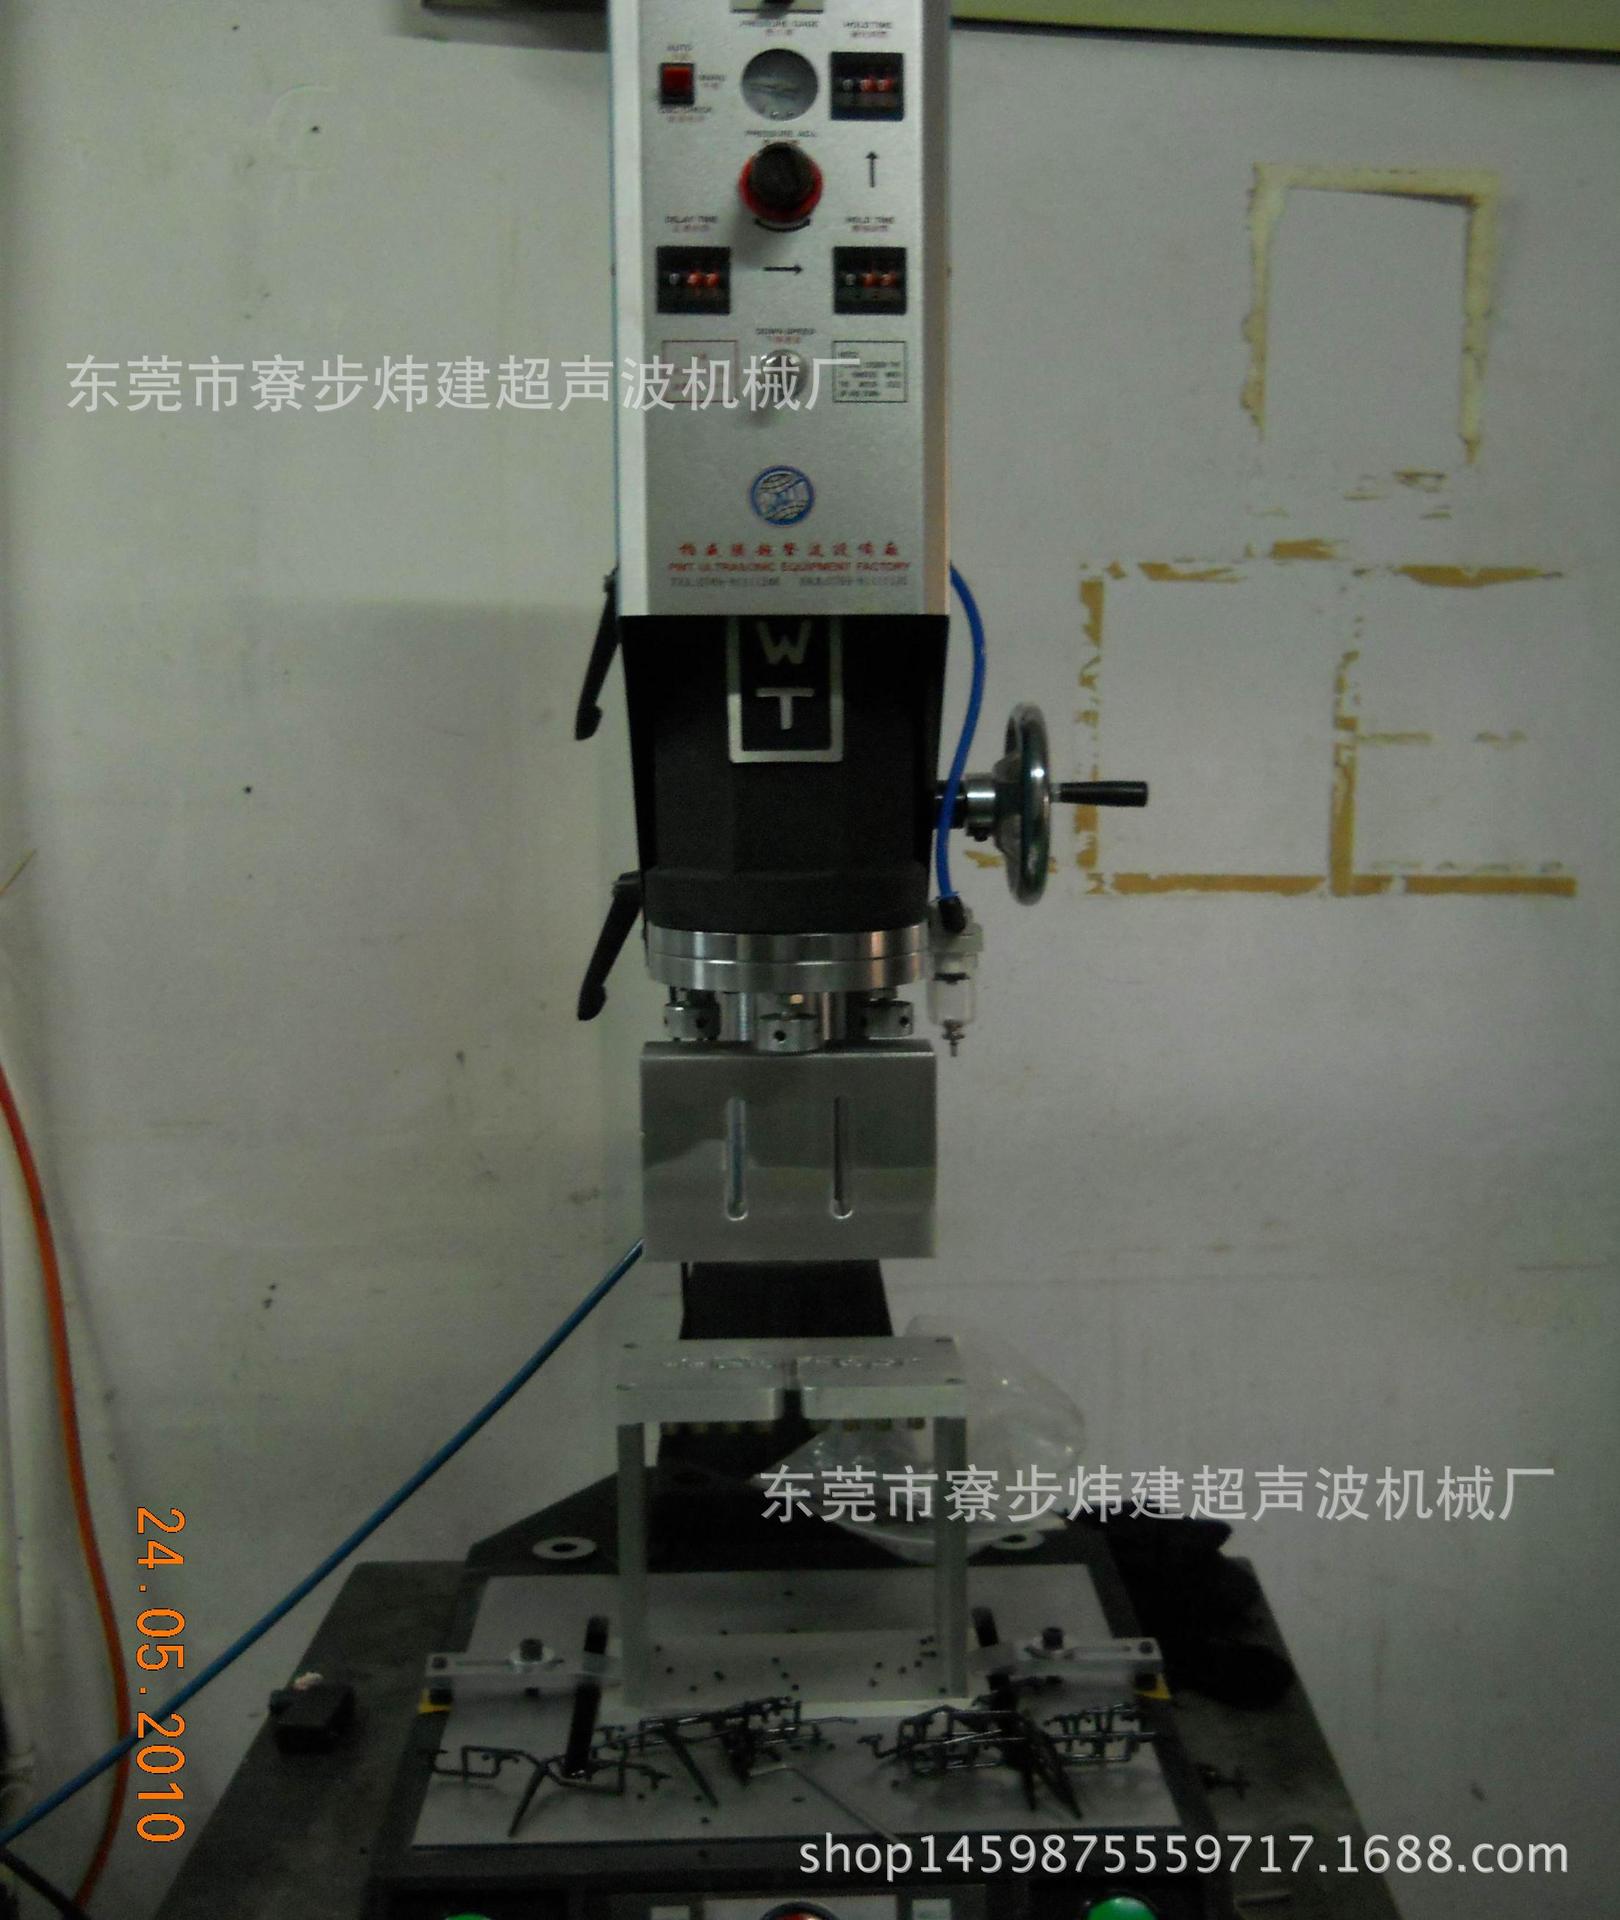 东莞炜建超音波熔接机械厂产销湖南超声波焊接设备、模具加工示例图12